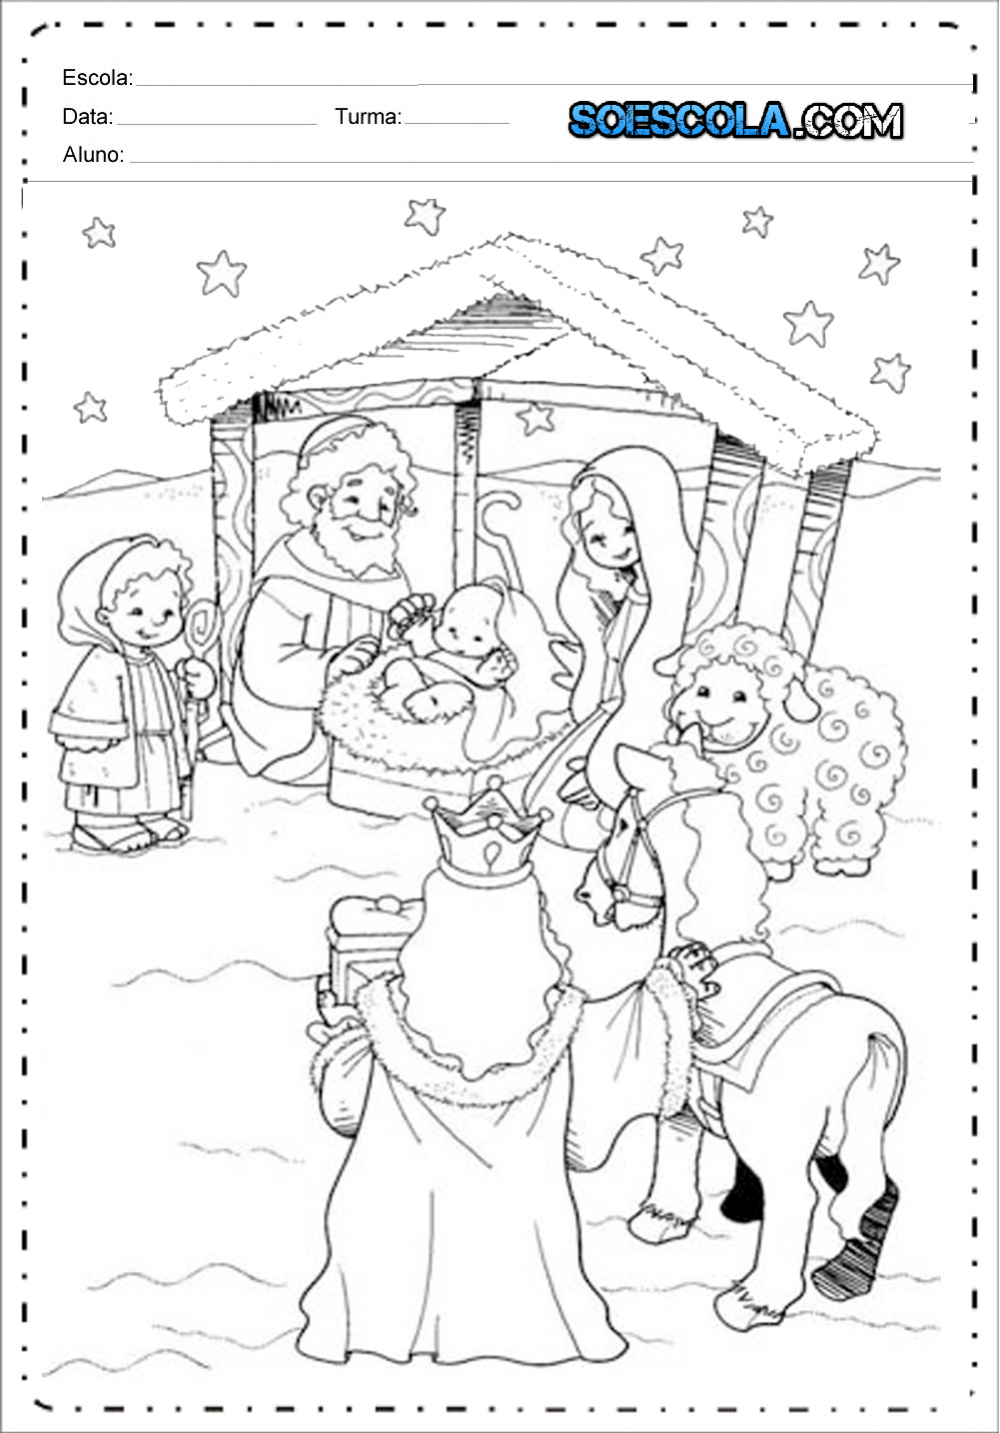 Desenhos de Presépio de Natal para colorir e imprimir — SÓ ESCOLA